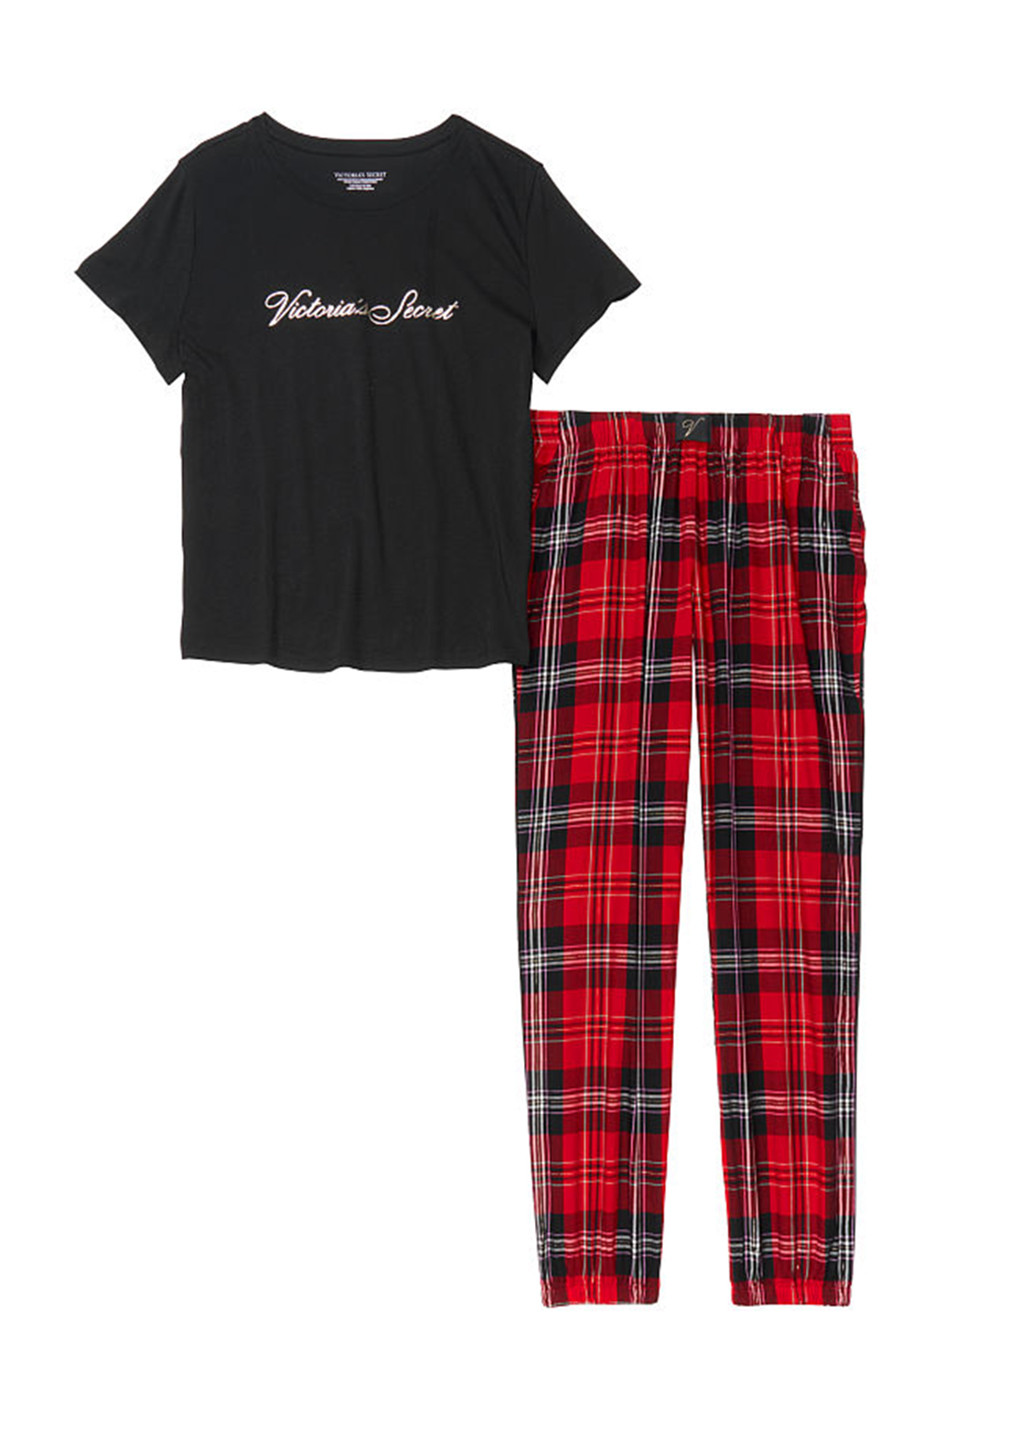 Комбинированная всесезон пижама (футболка, шорты) футболка + брюки Victoria's Secret